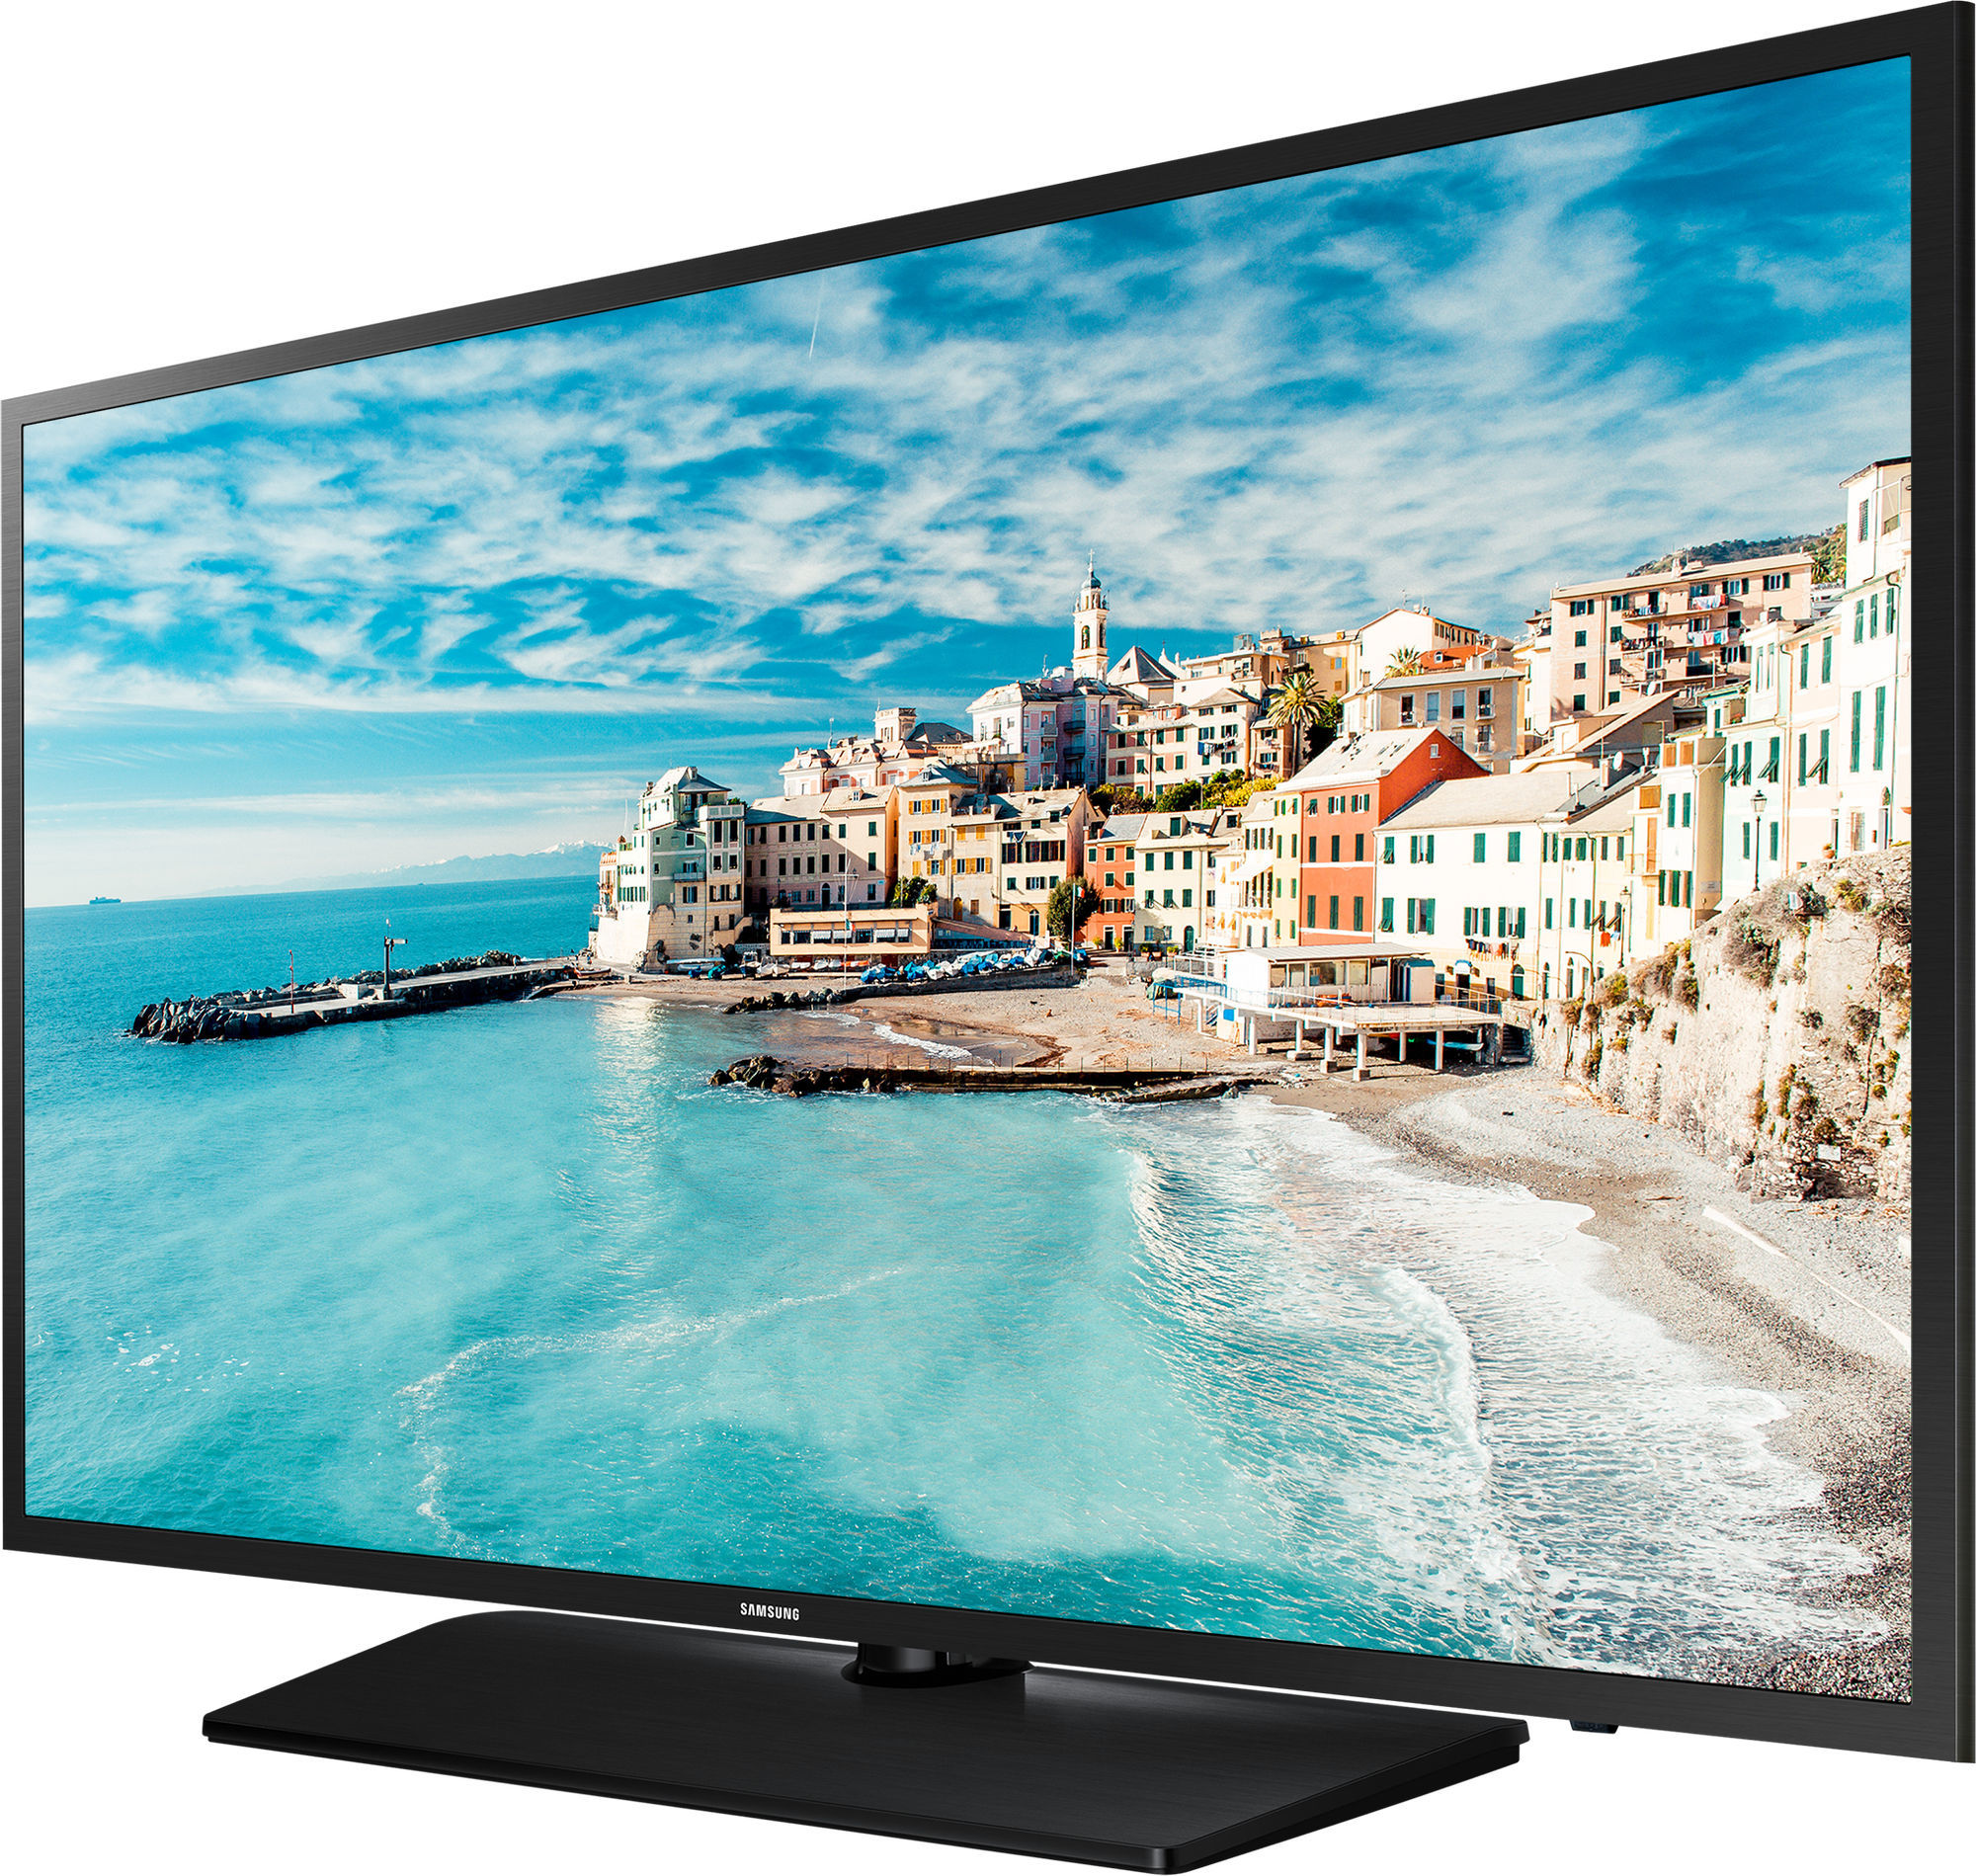 Купить телевизор в махачкале. Телевизор Samsung 32n4500. Телевизор самсунг 32n 5000. Телевизор Samsung 32n4000. Самсунг 32.d20yb.